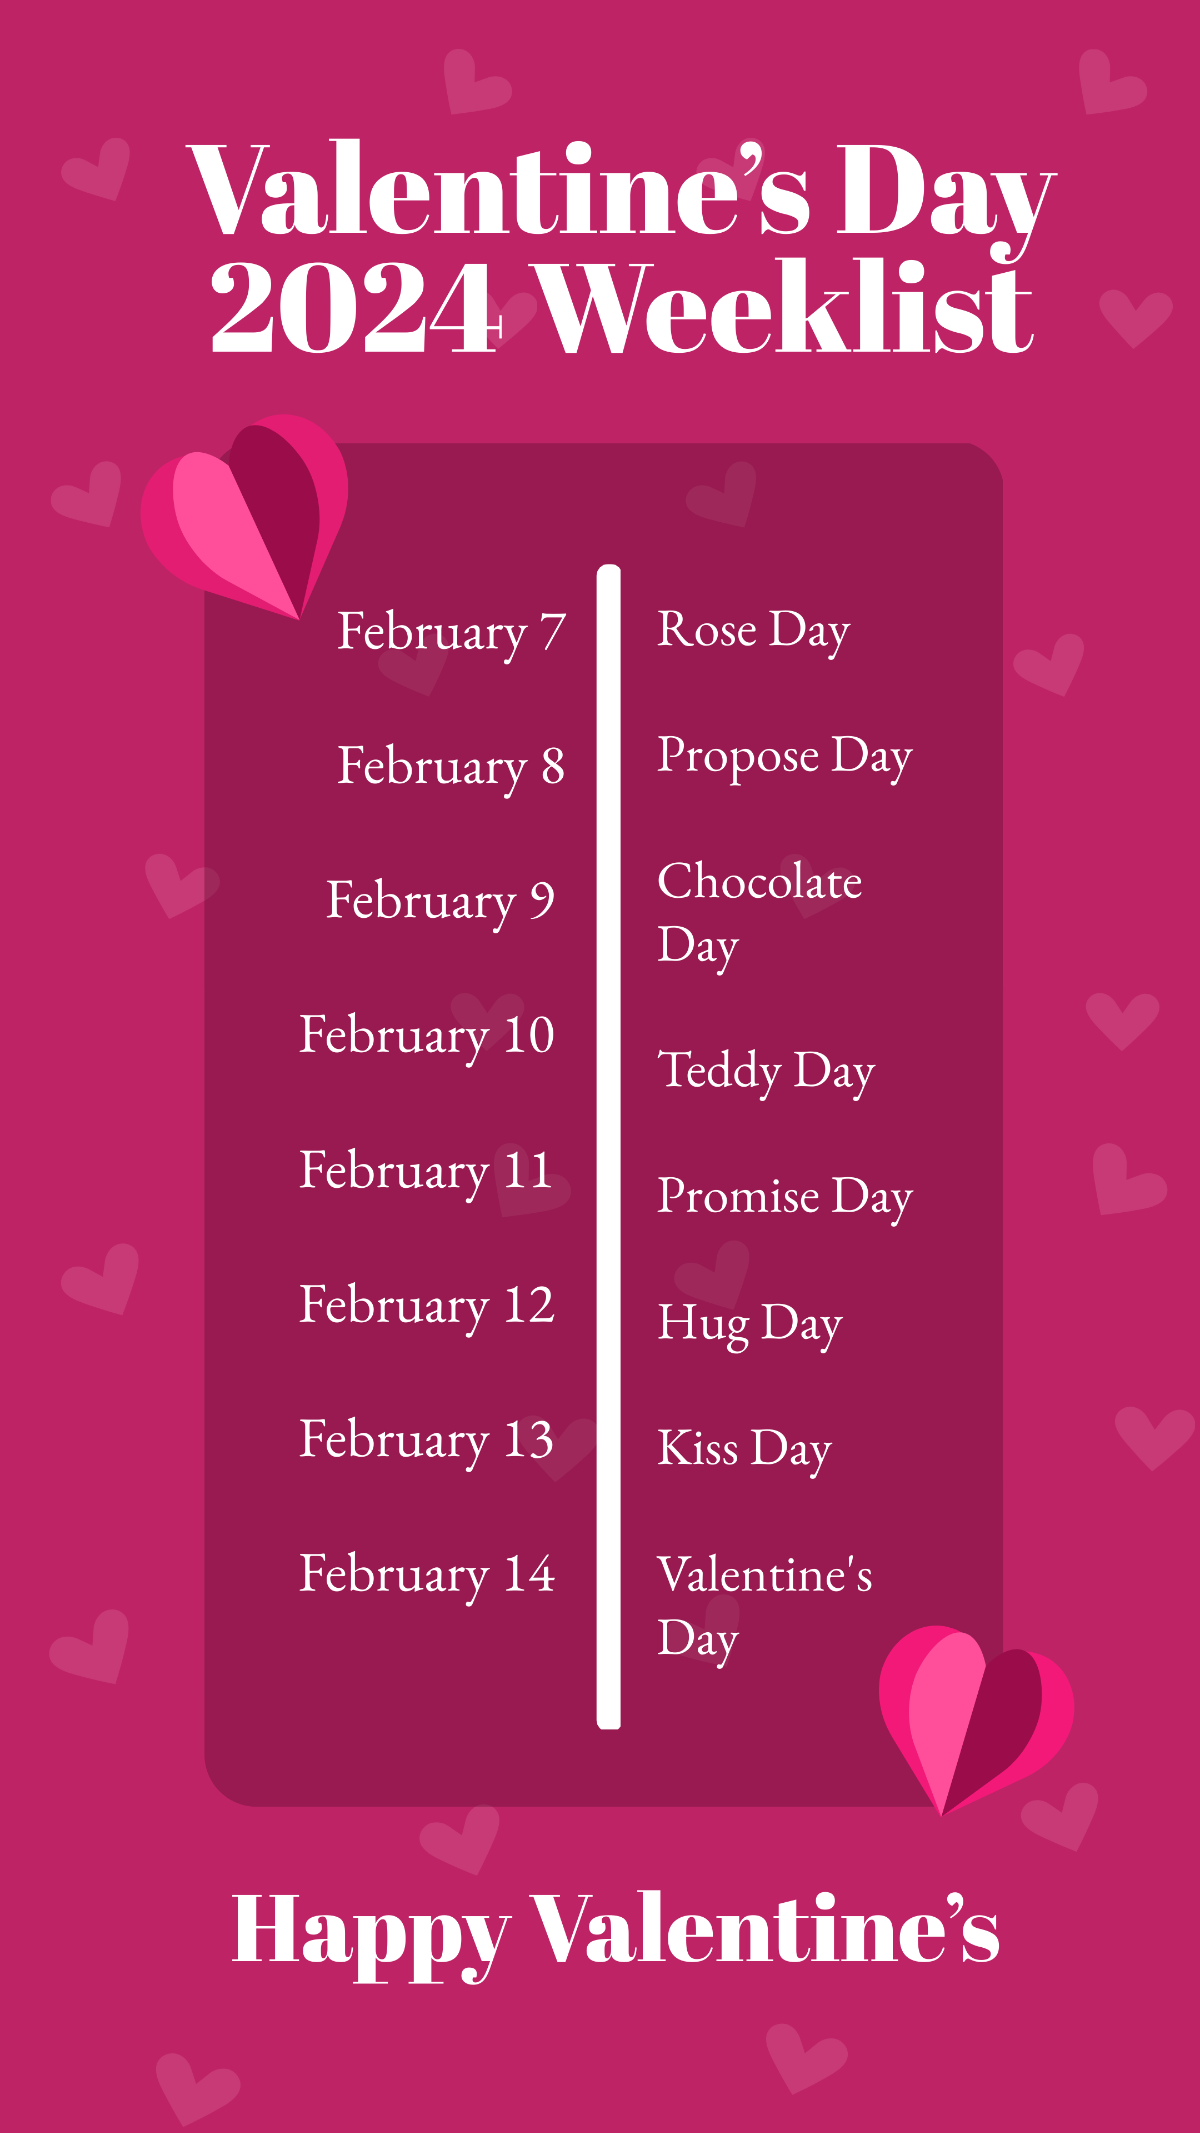 Valentine's Day Week List 2024 Template